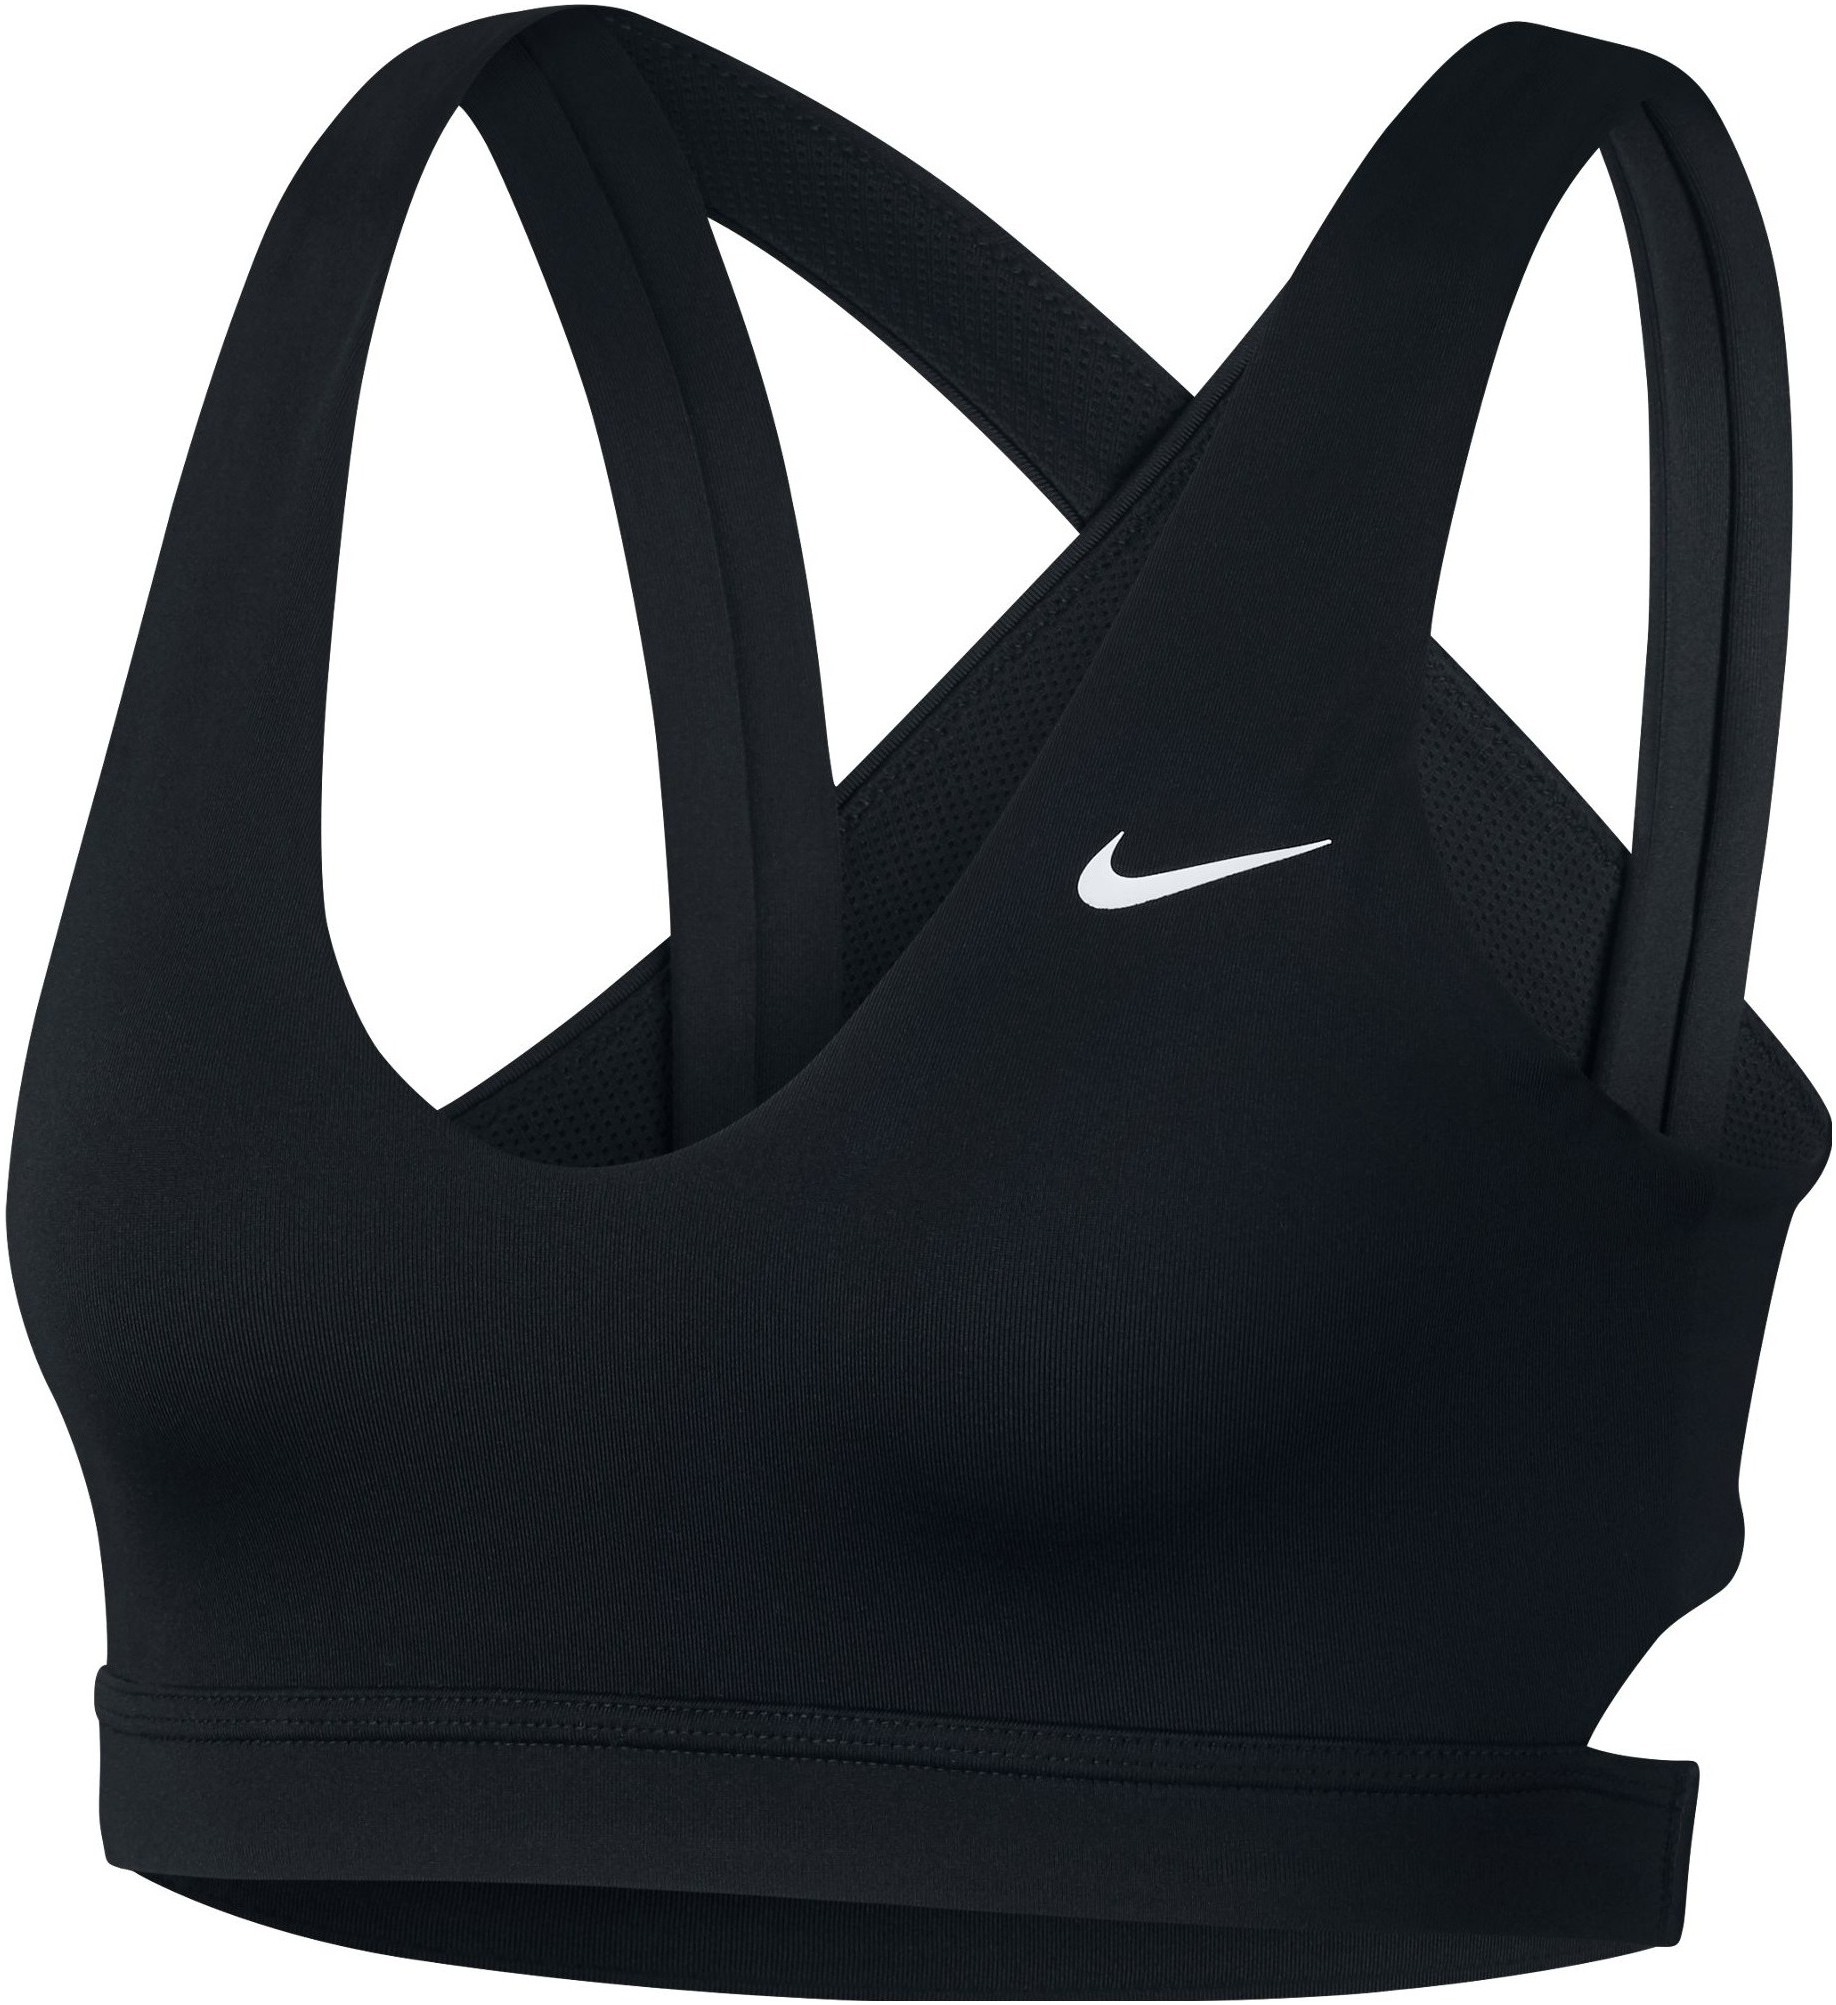 Womens sports bra Nike INDY LIGHT BRA W black